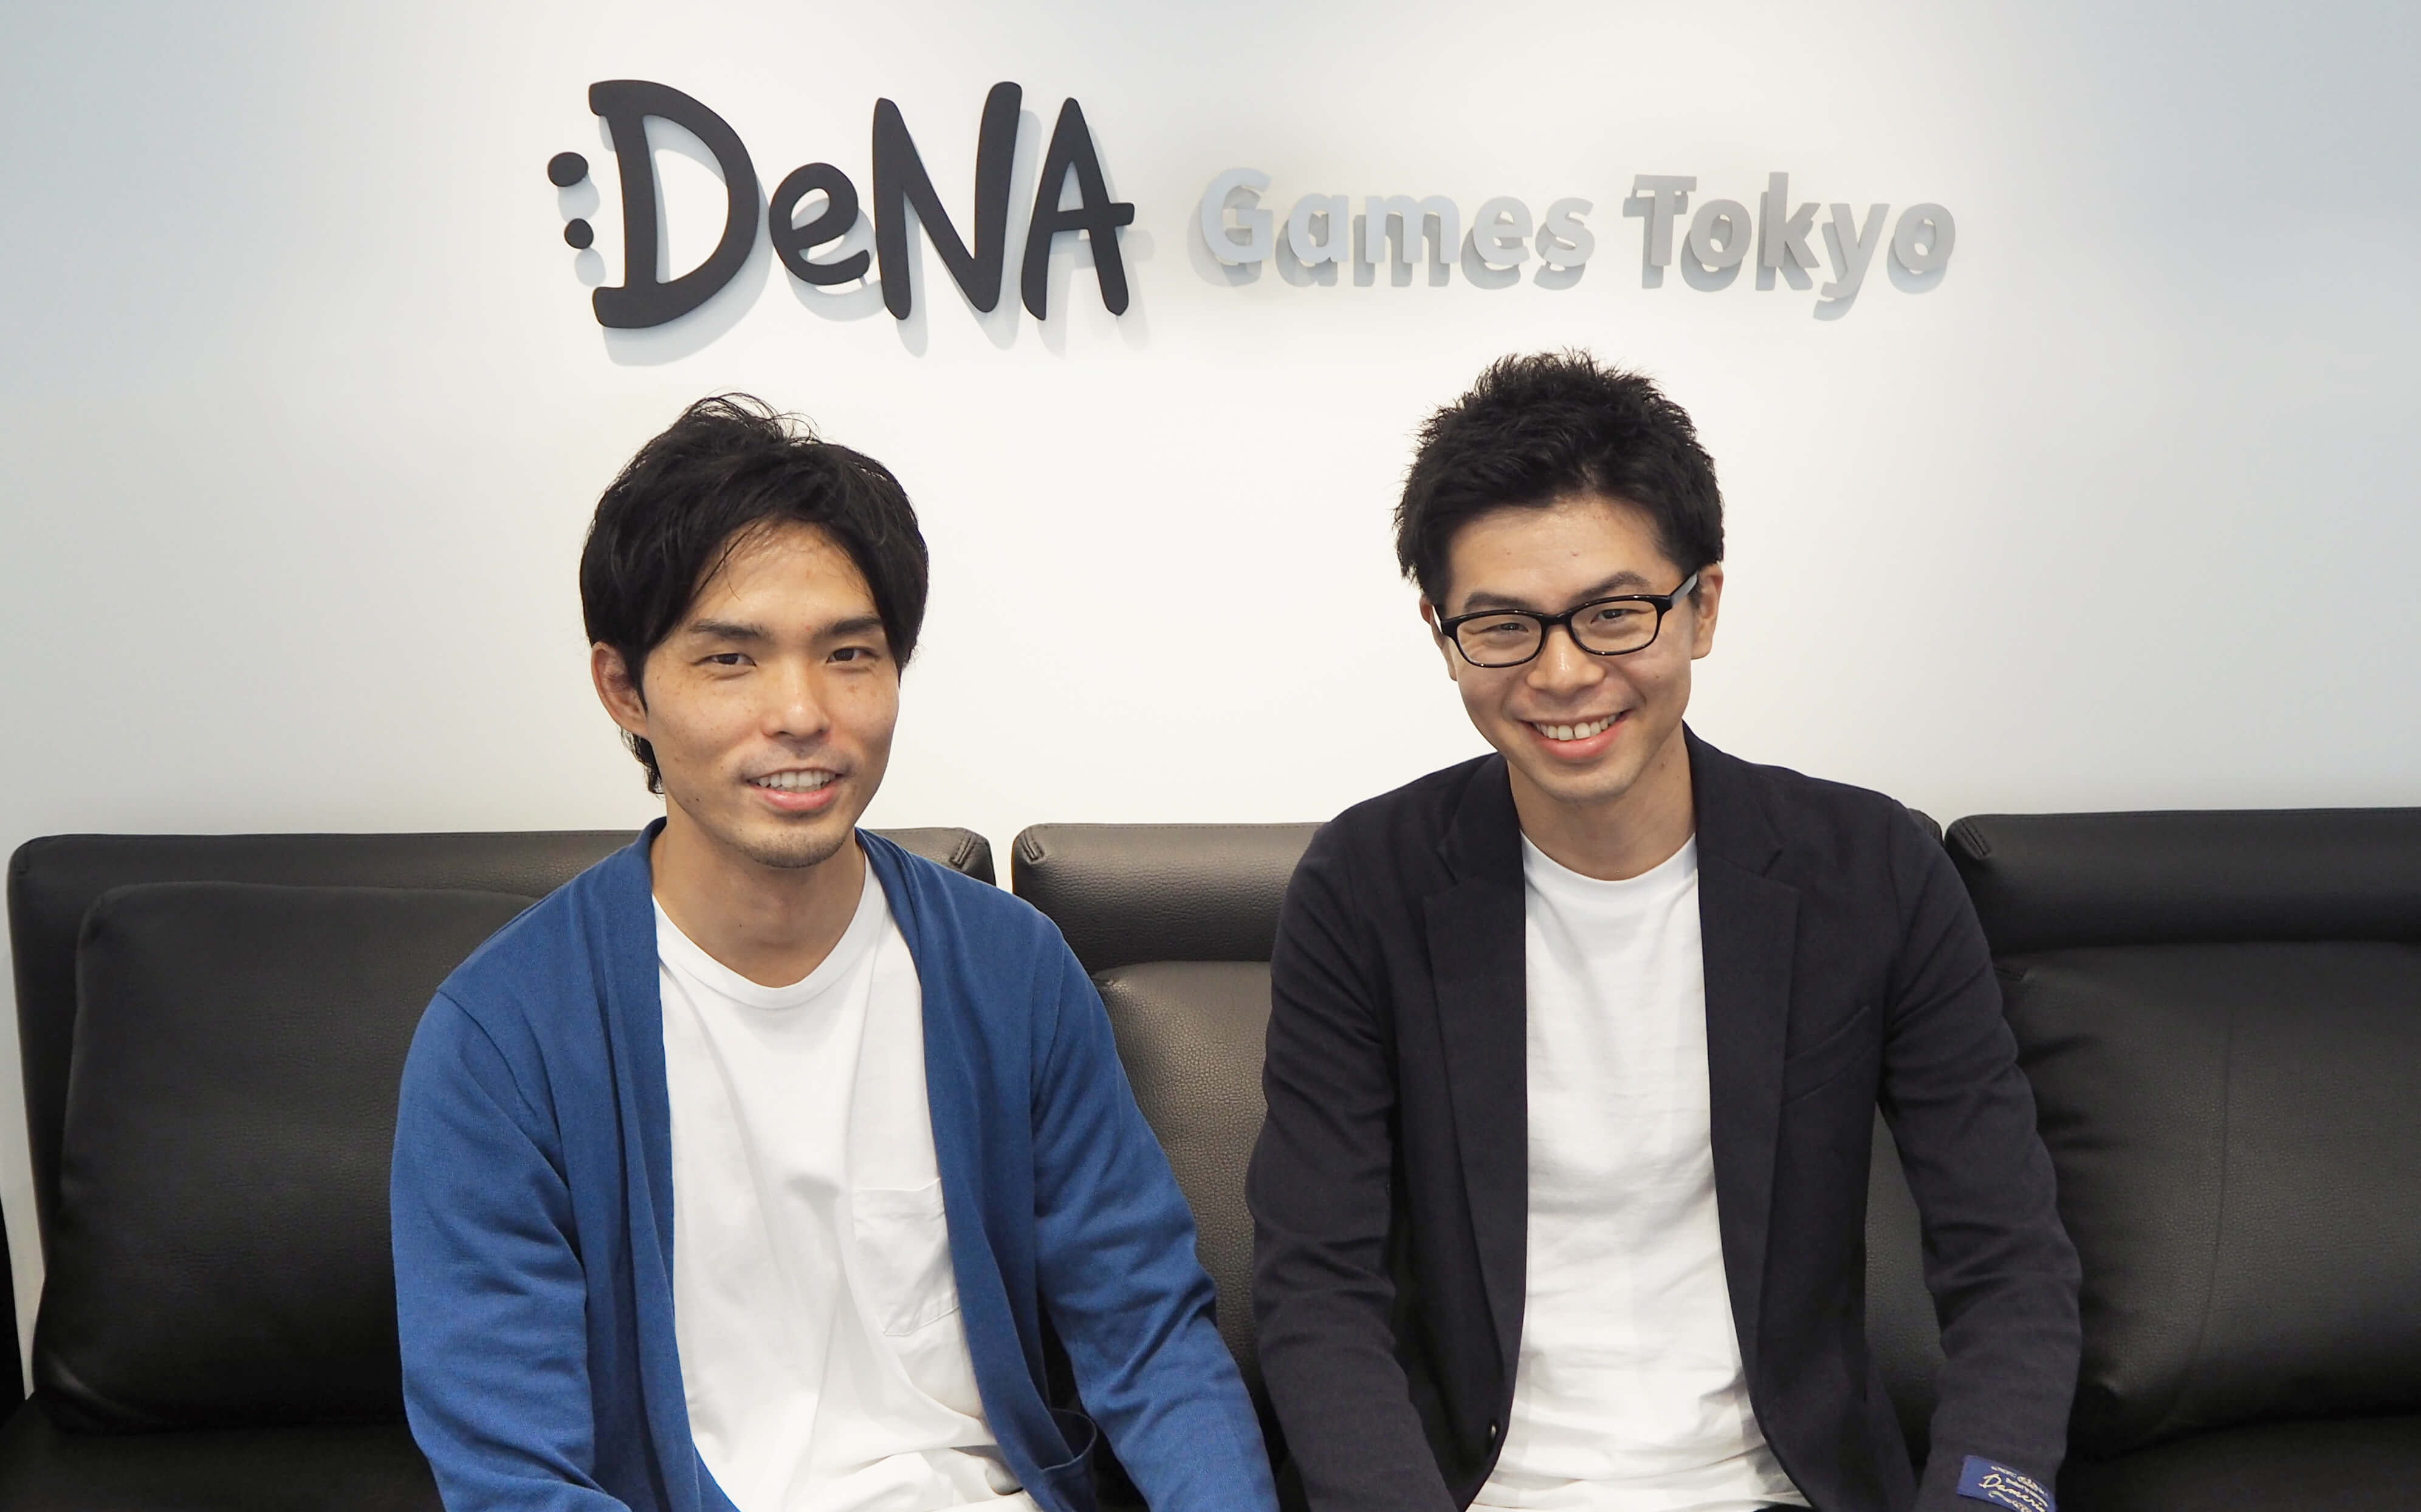 モバイルゲーム運営に特化したスペシャリスト集団 Dena Games Tokyoインタビュー ゲーム運営の可能性を拡げる新たな取り組みに迫る